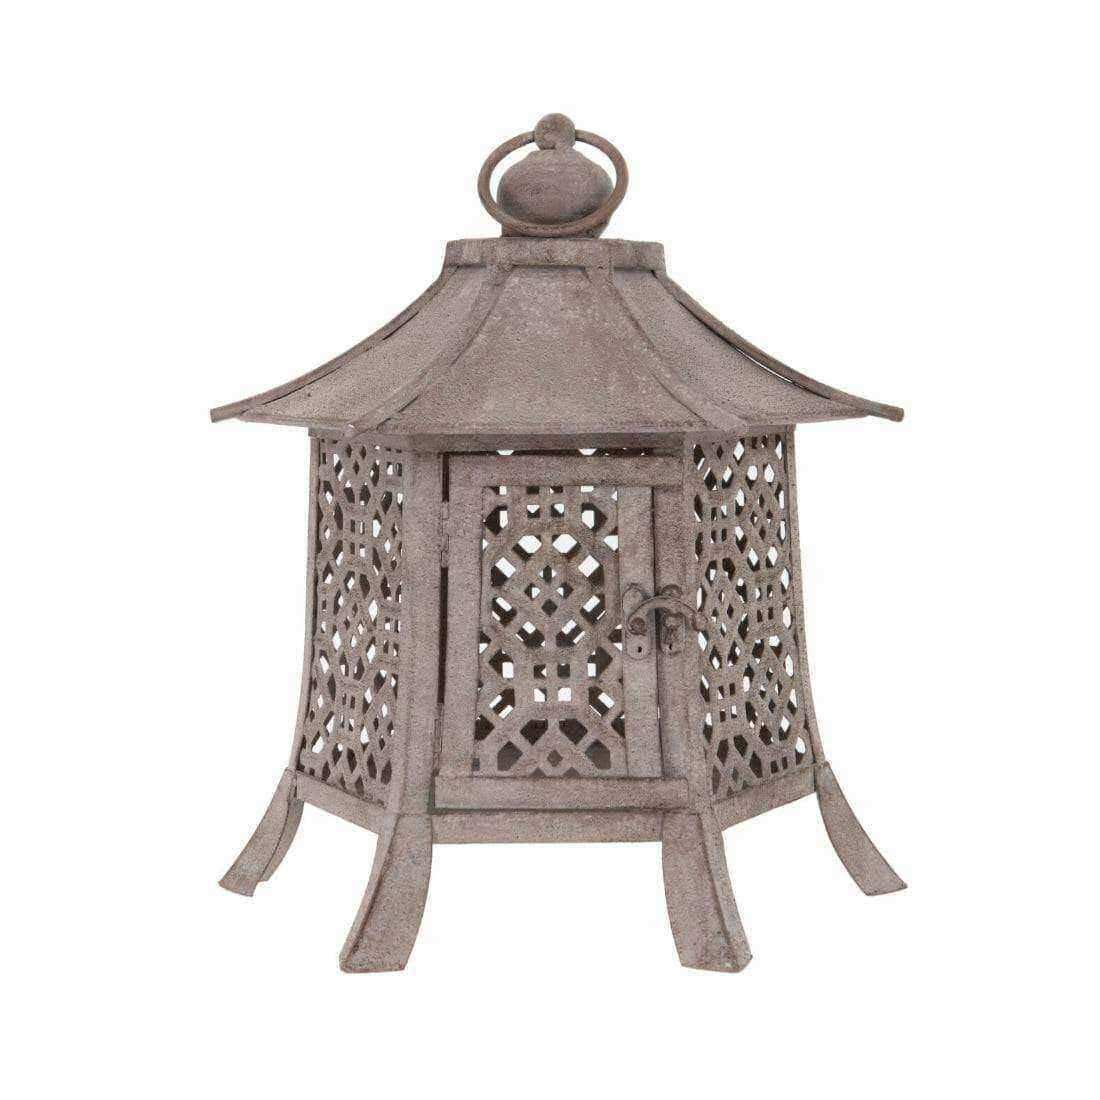 Hexagonal Chinese Inspired Metal Lantern - The Farthing